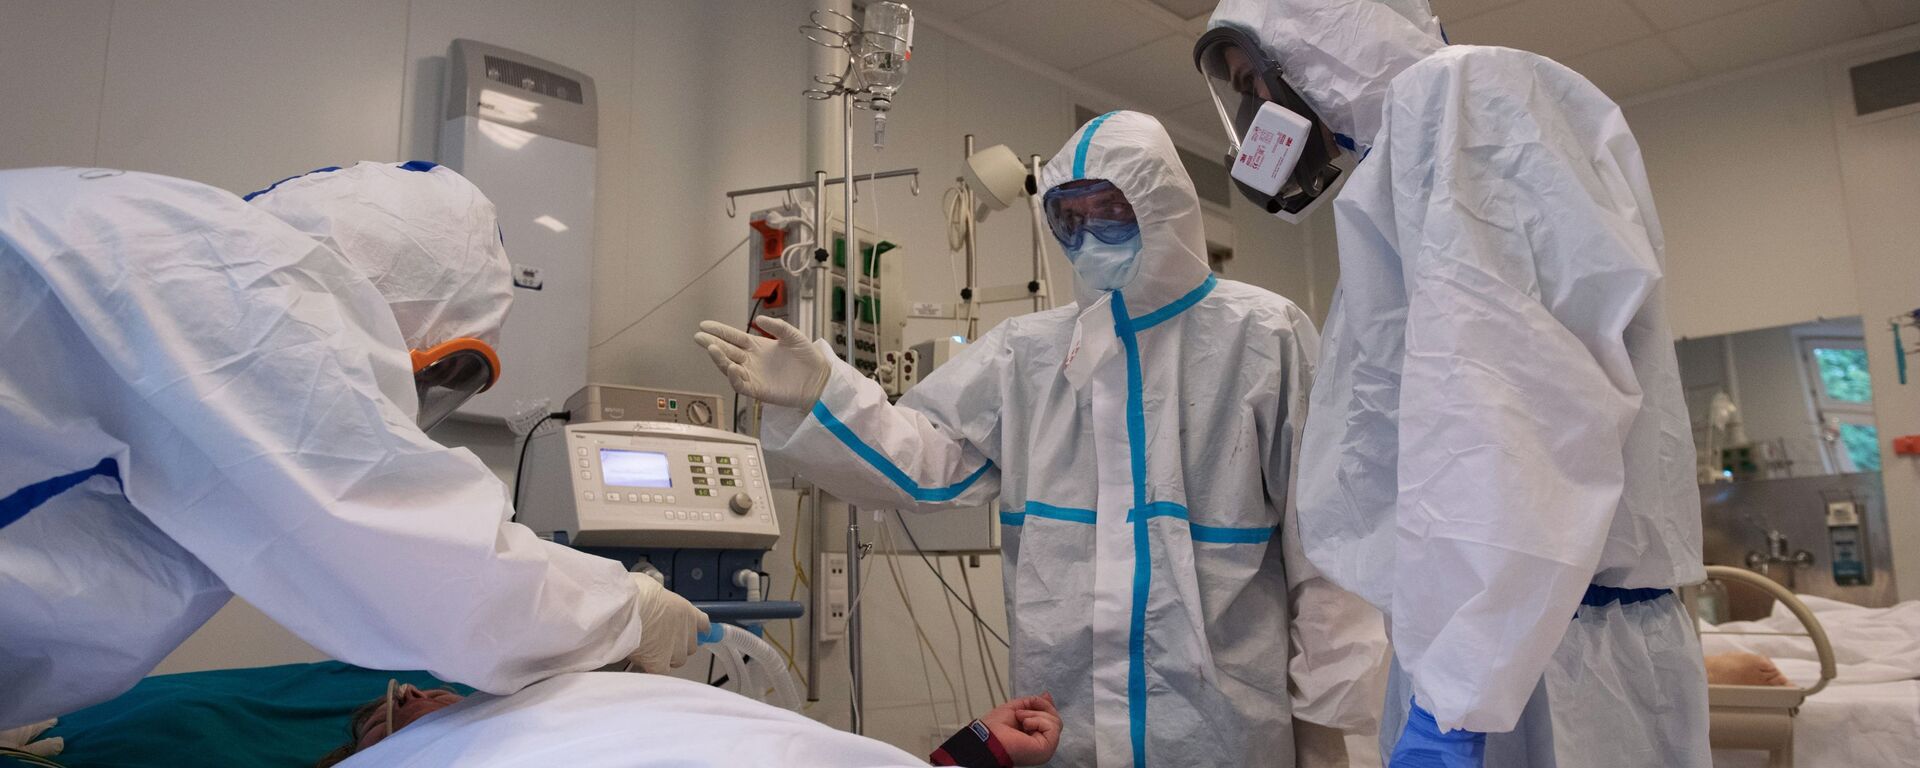 فحص و معالجة مرضى كوفيد-19 (كورونا) في مستشفى بيروغوفا في موسكو، روسيا  18 مايو 2020 - سبوتنيك عربي, 1920, 28.01.2021